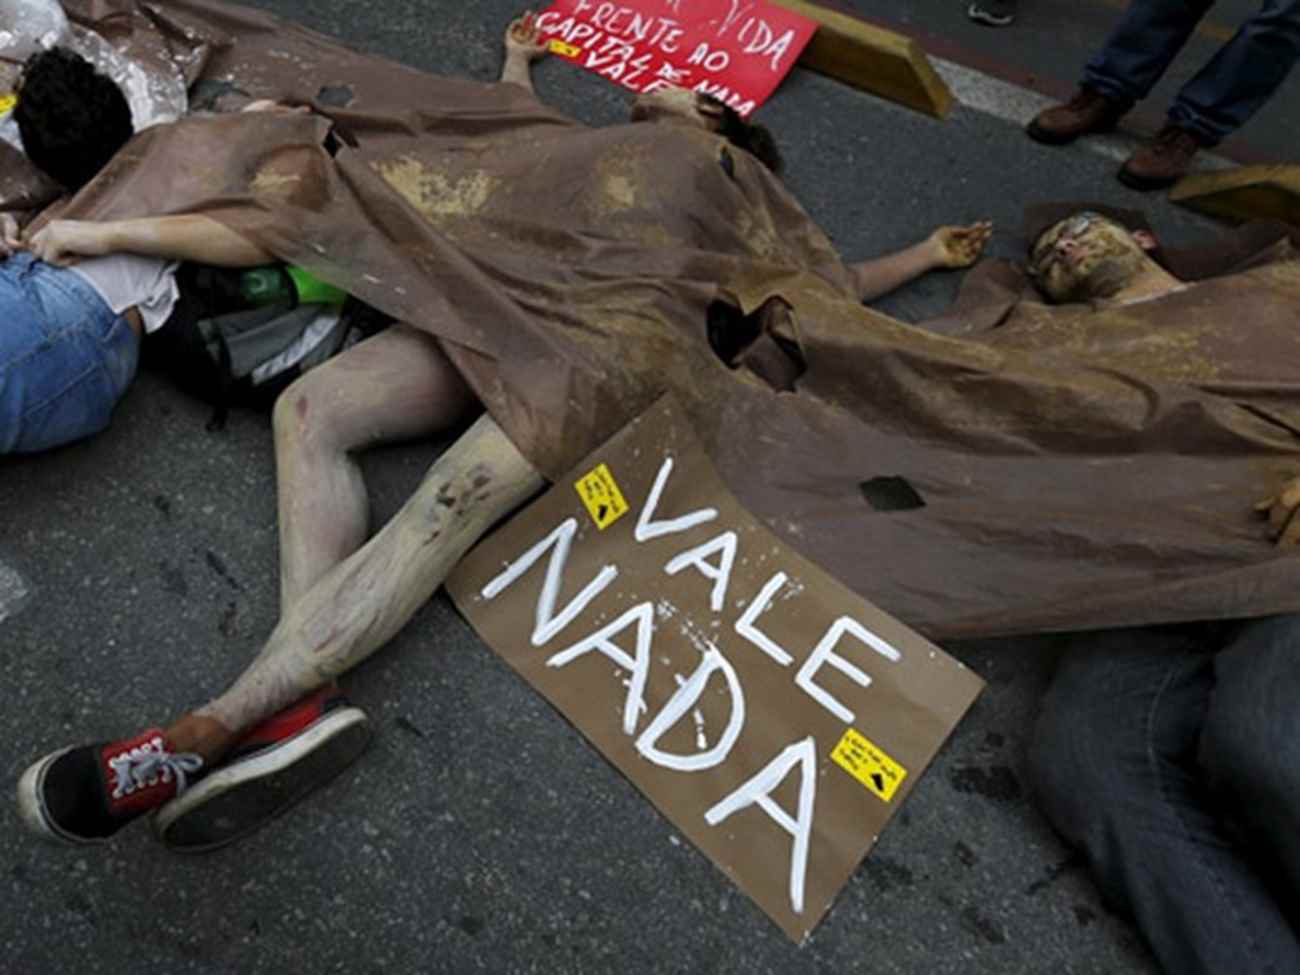 Manifestantes querem que a Vale seja responsabilizada (Foto: Sergio Moraes/Reuters)